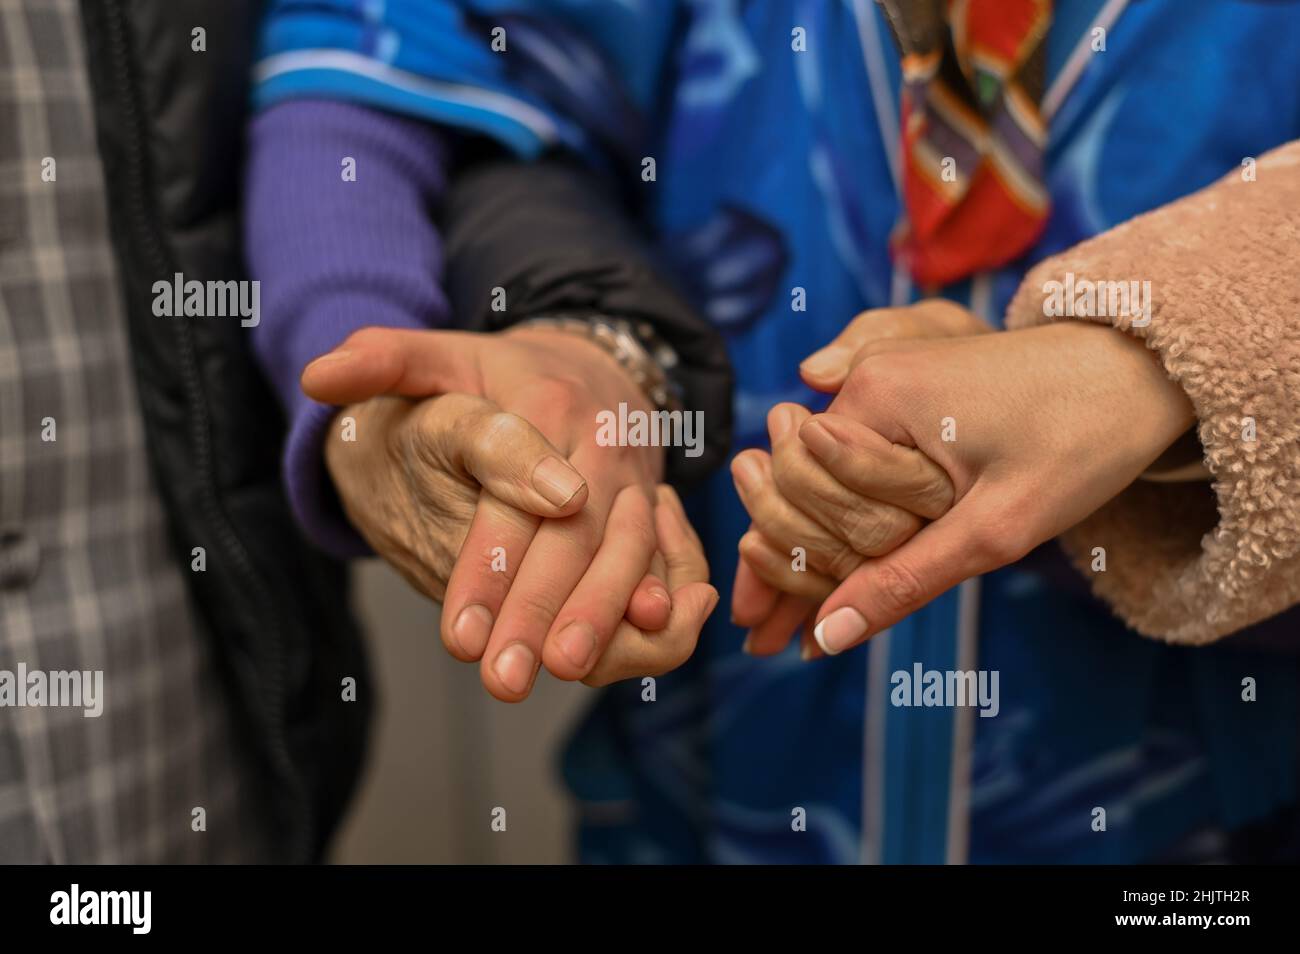 Die Großmutter hält die Hände eines jungen Mannes und einer Frau. Nahaufnahme. Alte Hände. Stockfoto